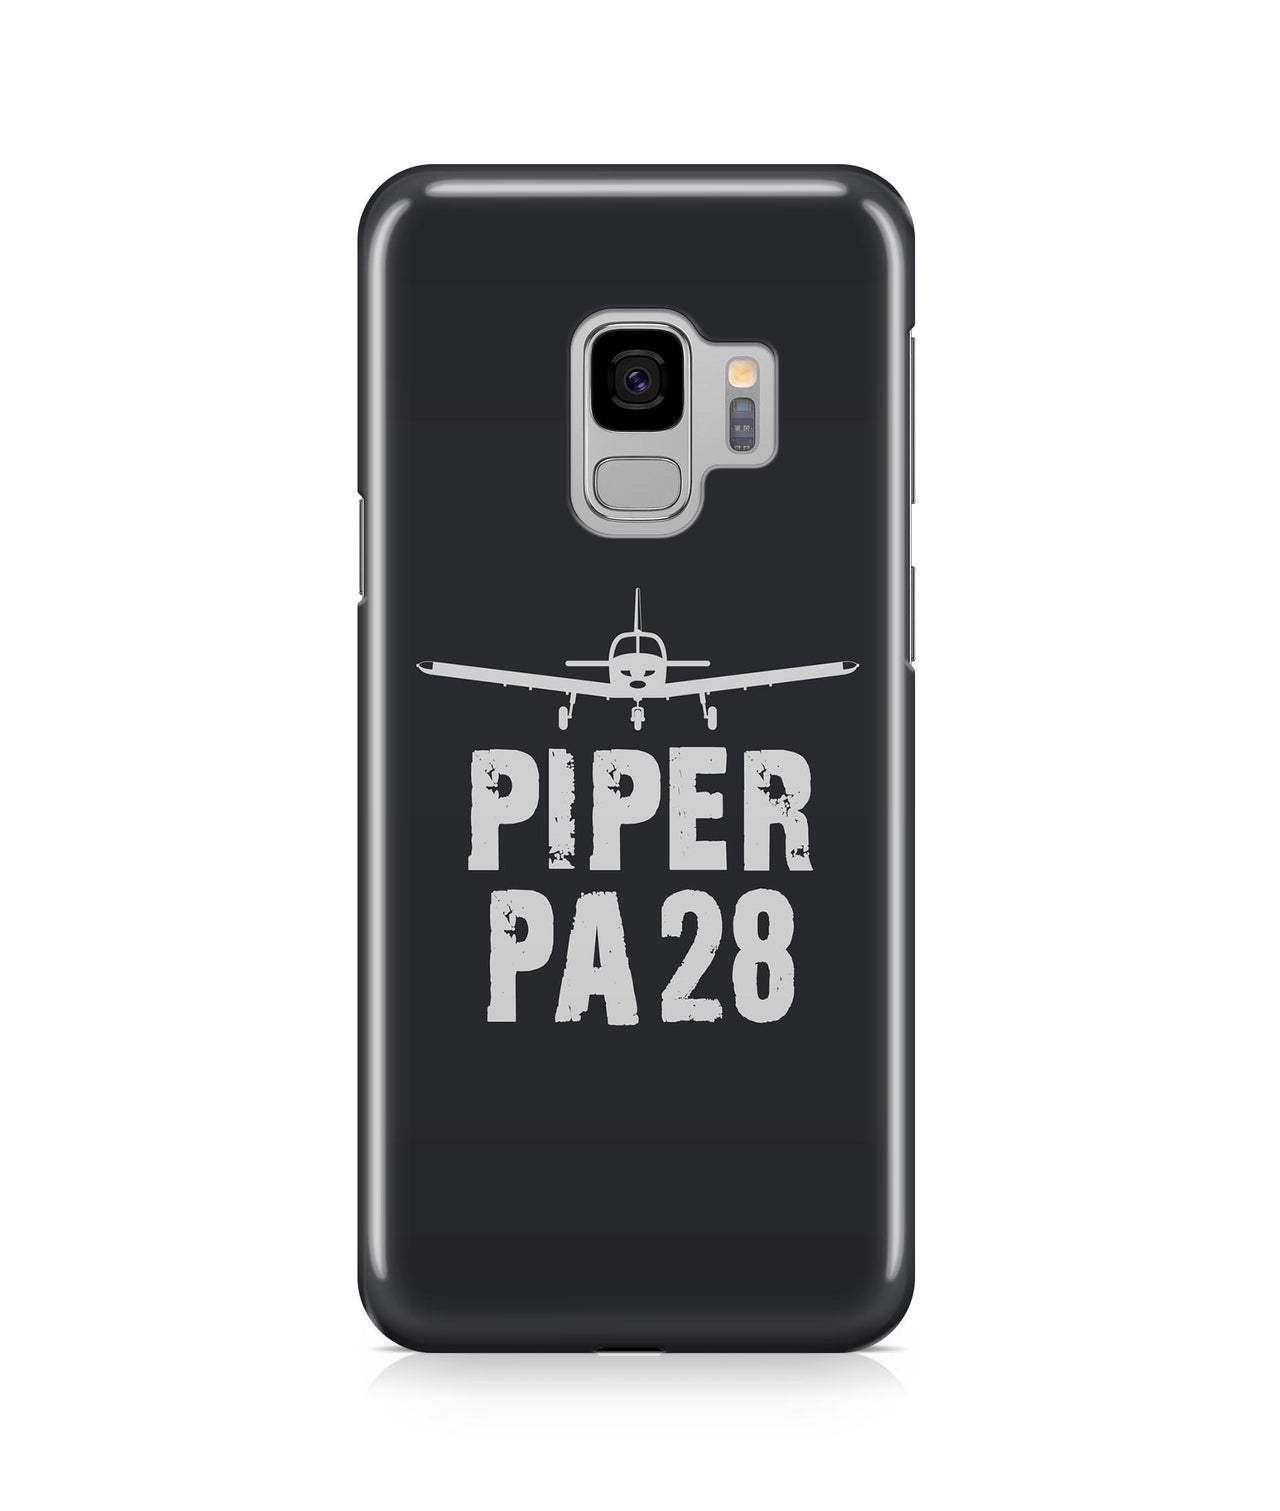 Piper PA28 Plane & Designed Samsung J Cases